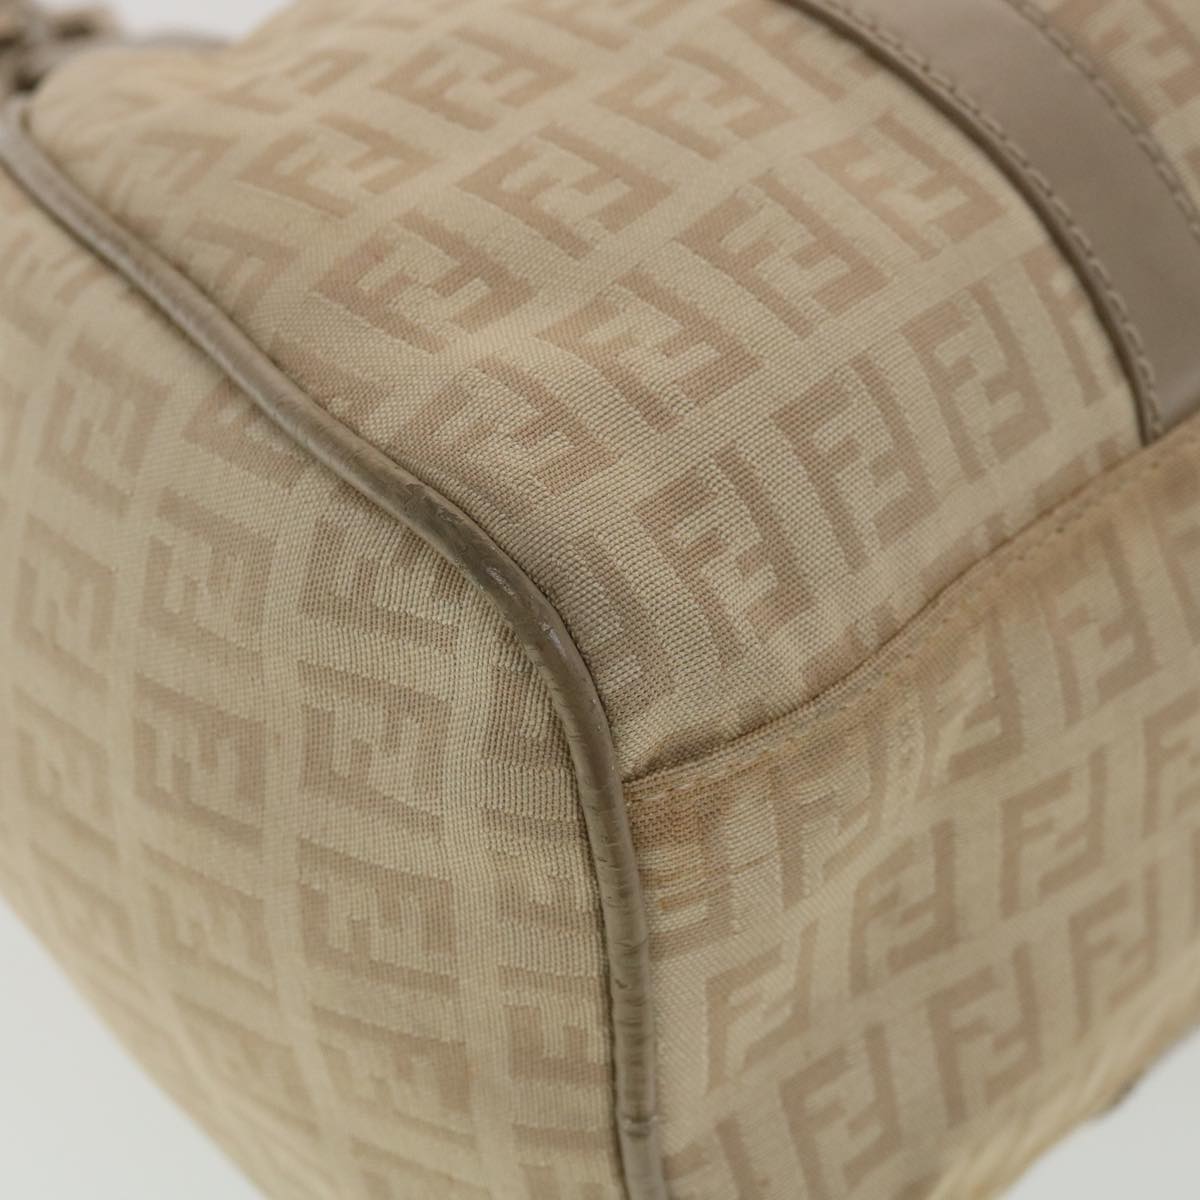 FENDI Zucchino Canvas Shoulder Bag Beige 2373-8BR091-KU7-048 Auth bs4404